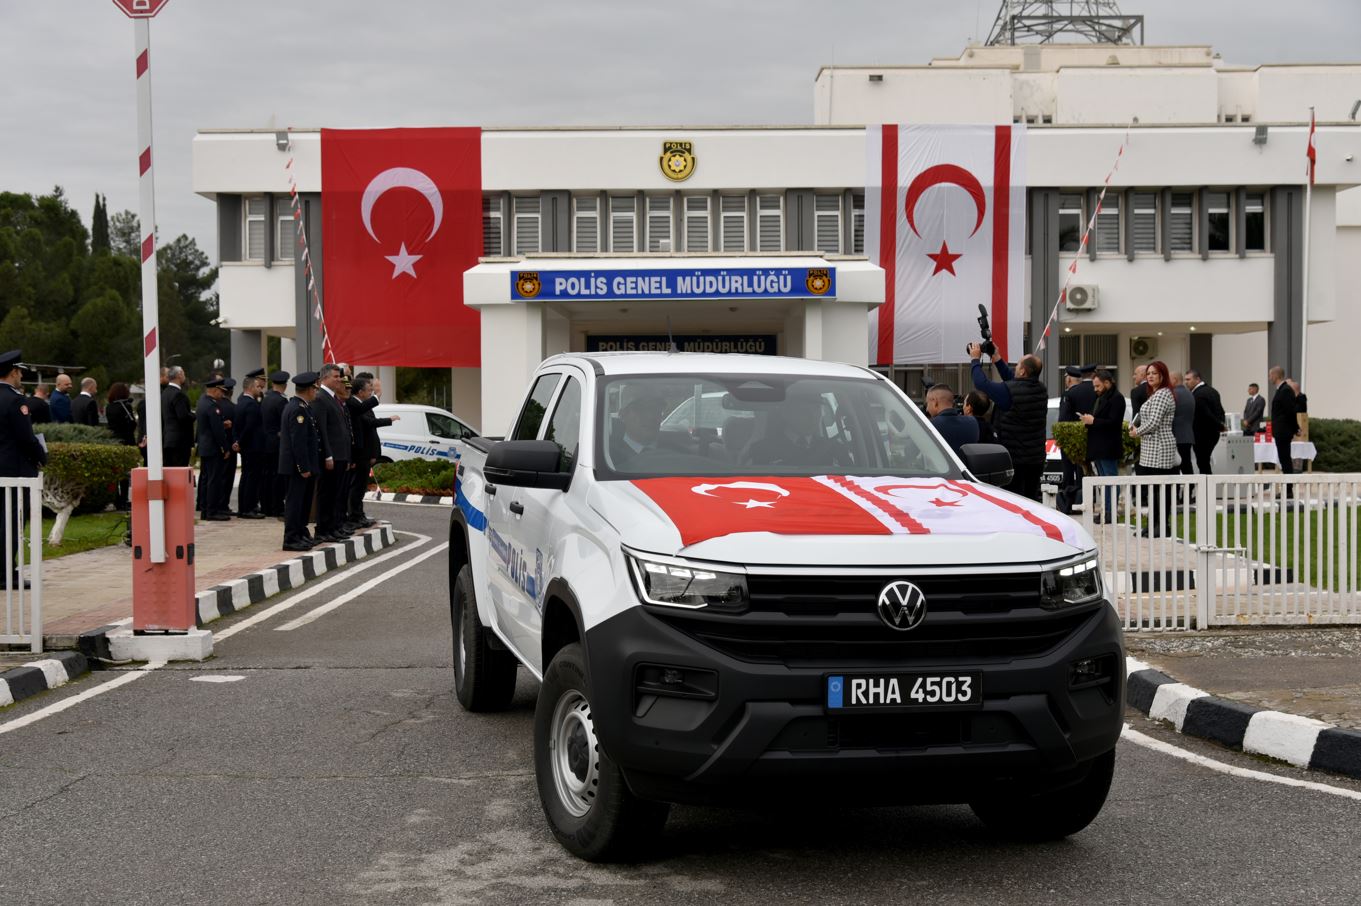 Türkiye Cumhuriyeti’nden güvenlik sektörü projelerine 77,7 milyon TL ödenek ayrıldı, 26,4 milyon TL harcama yapıldı…